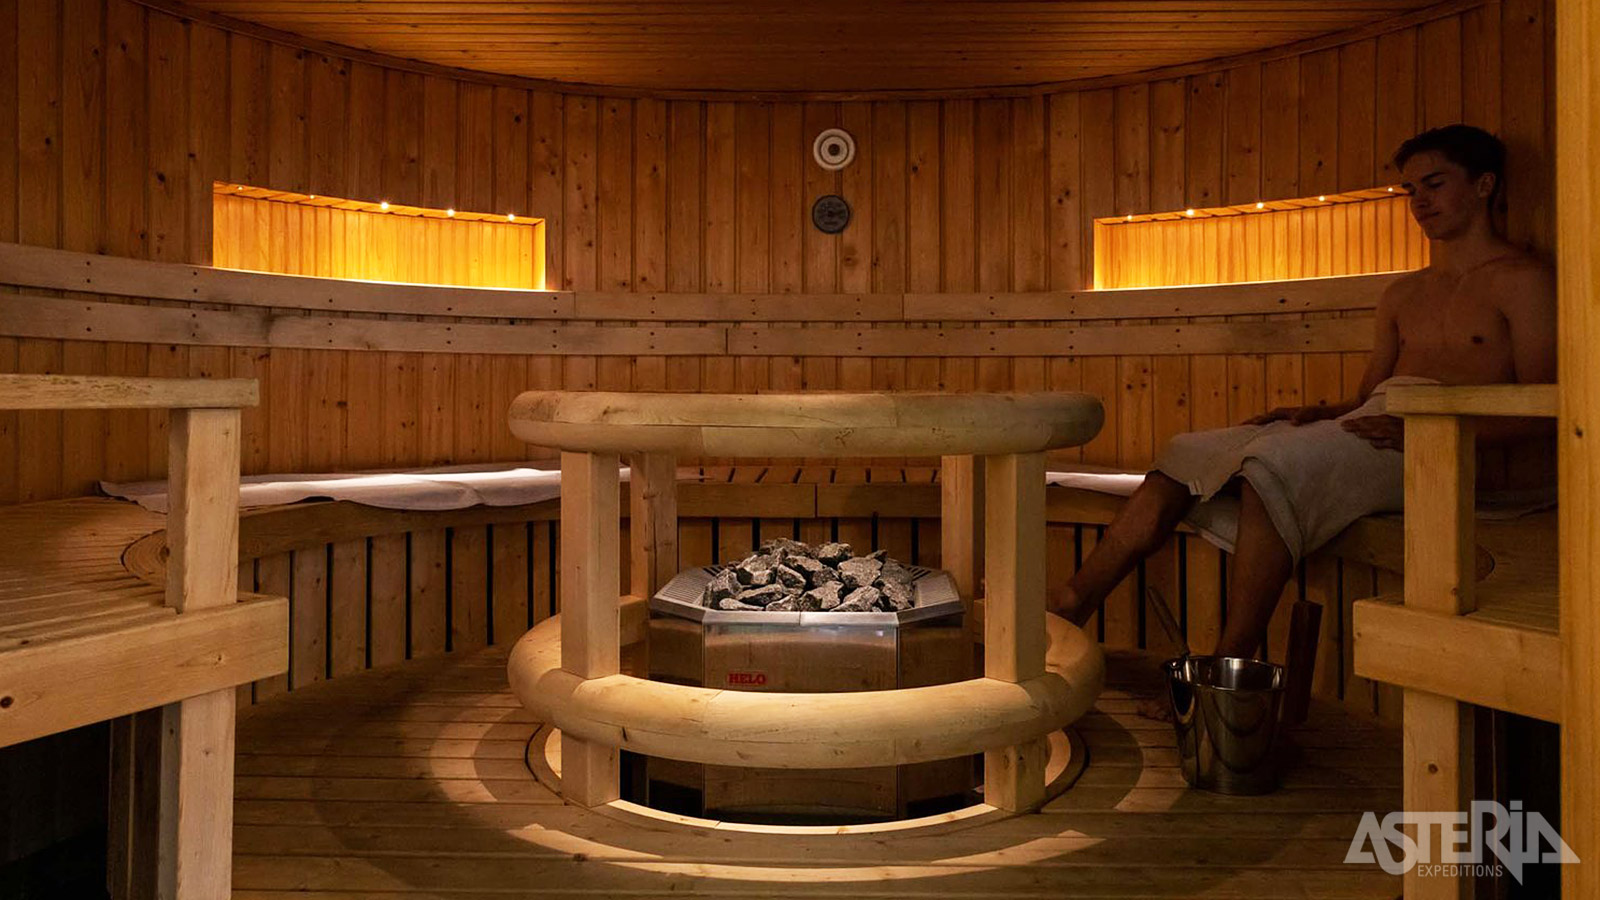 Na een actieve dag in de gezonde buitenlucht kan je ’s avonds genieten van een deugddoende sauna